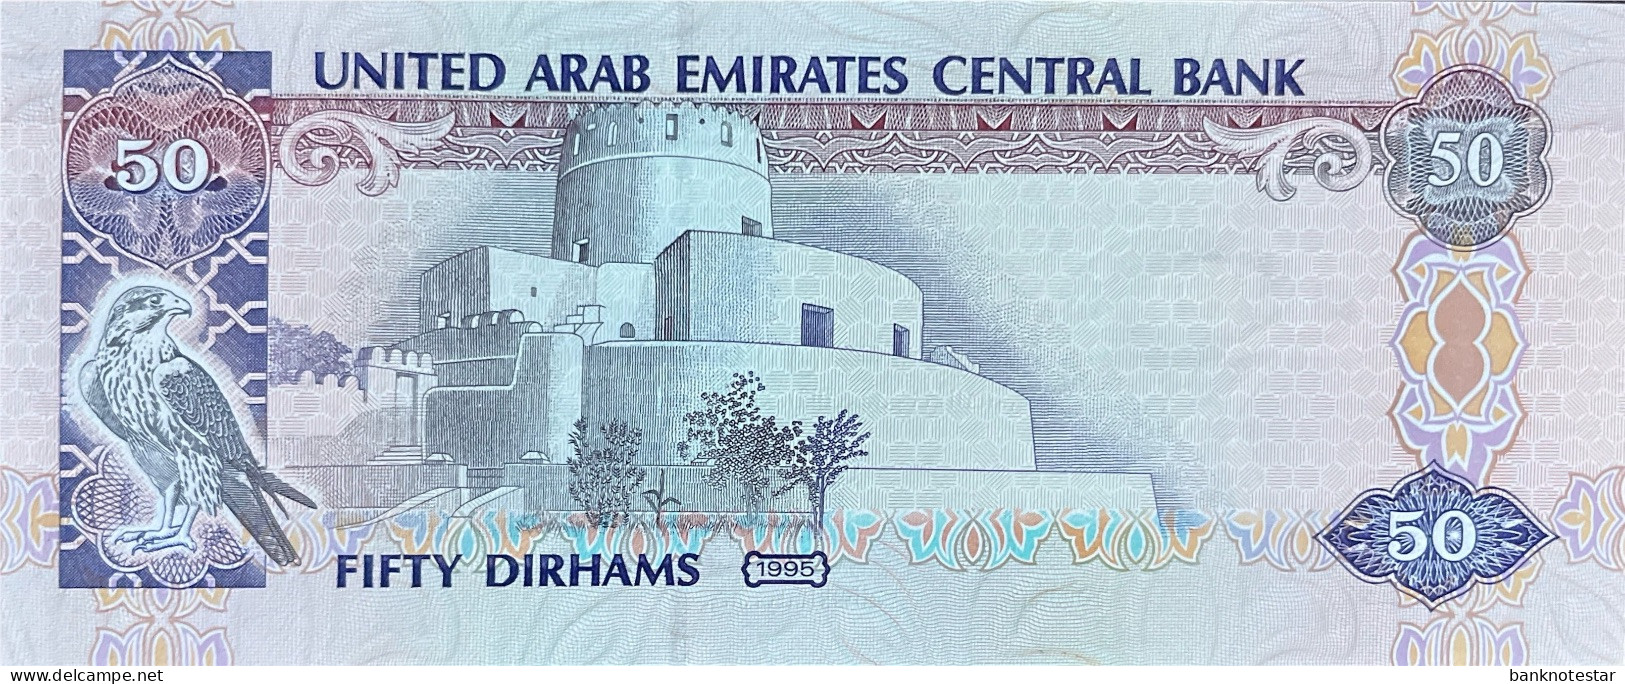 United Arab Emirates 50 Dirhams, P-14a (1993) - UNC - Prefix 01 - Ver. Arab. Emirate